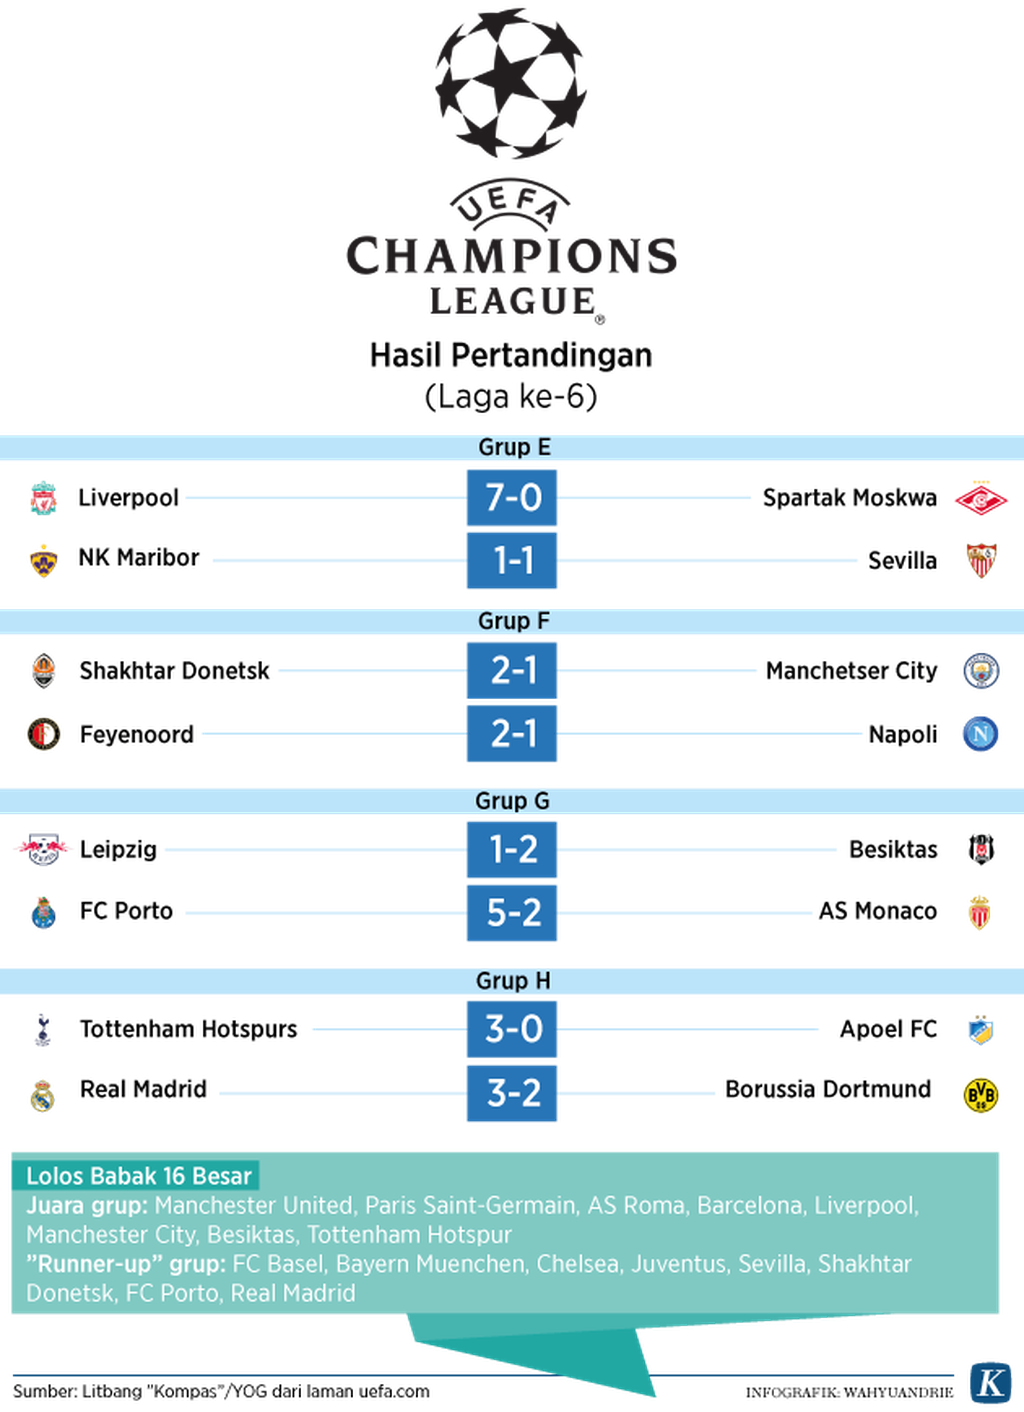 https://cdn-assetd.kompas.id/k-hiG9jWgwTQYLlM-tldm5SdQIw=/1024x1412/https%3A%2F%2Fkompas.id%2Fwp-content%2Fuploads%2F2017%2F12%2F20171207-Liga-Champions-Eropa-Match-6-Grup-E-H.png